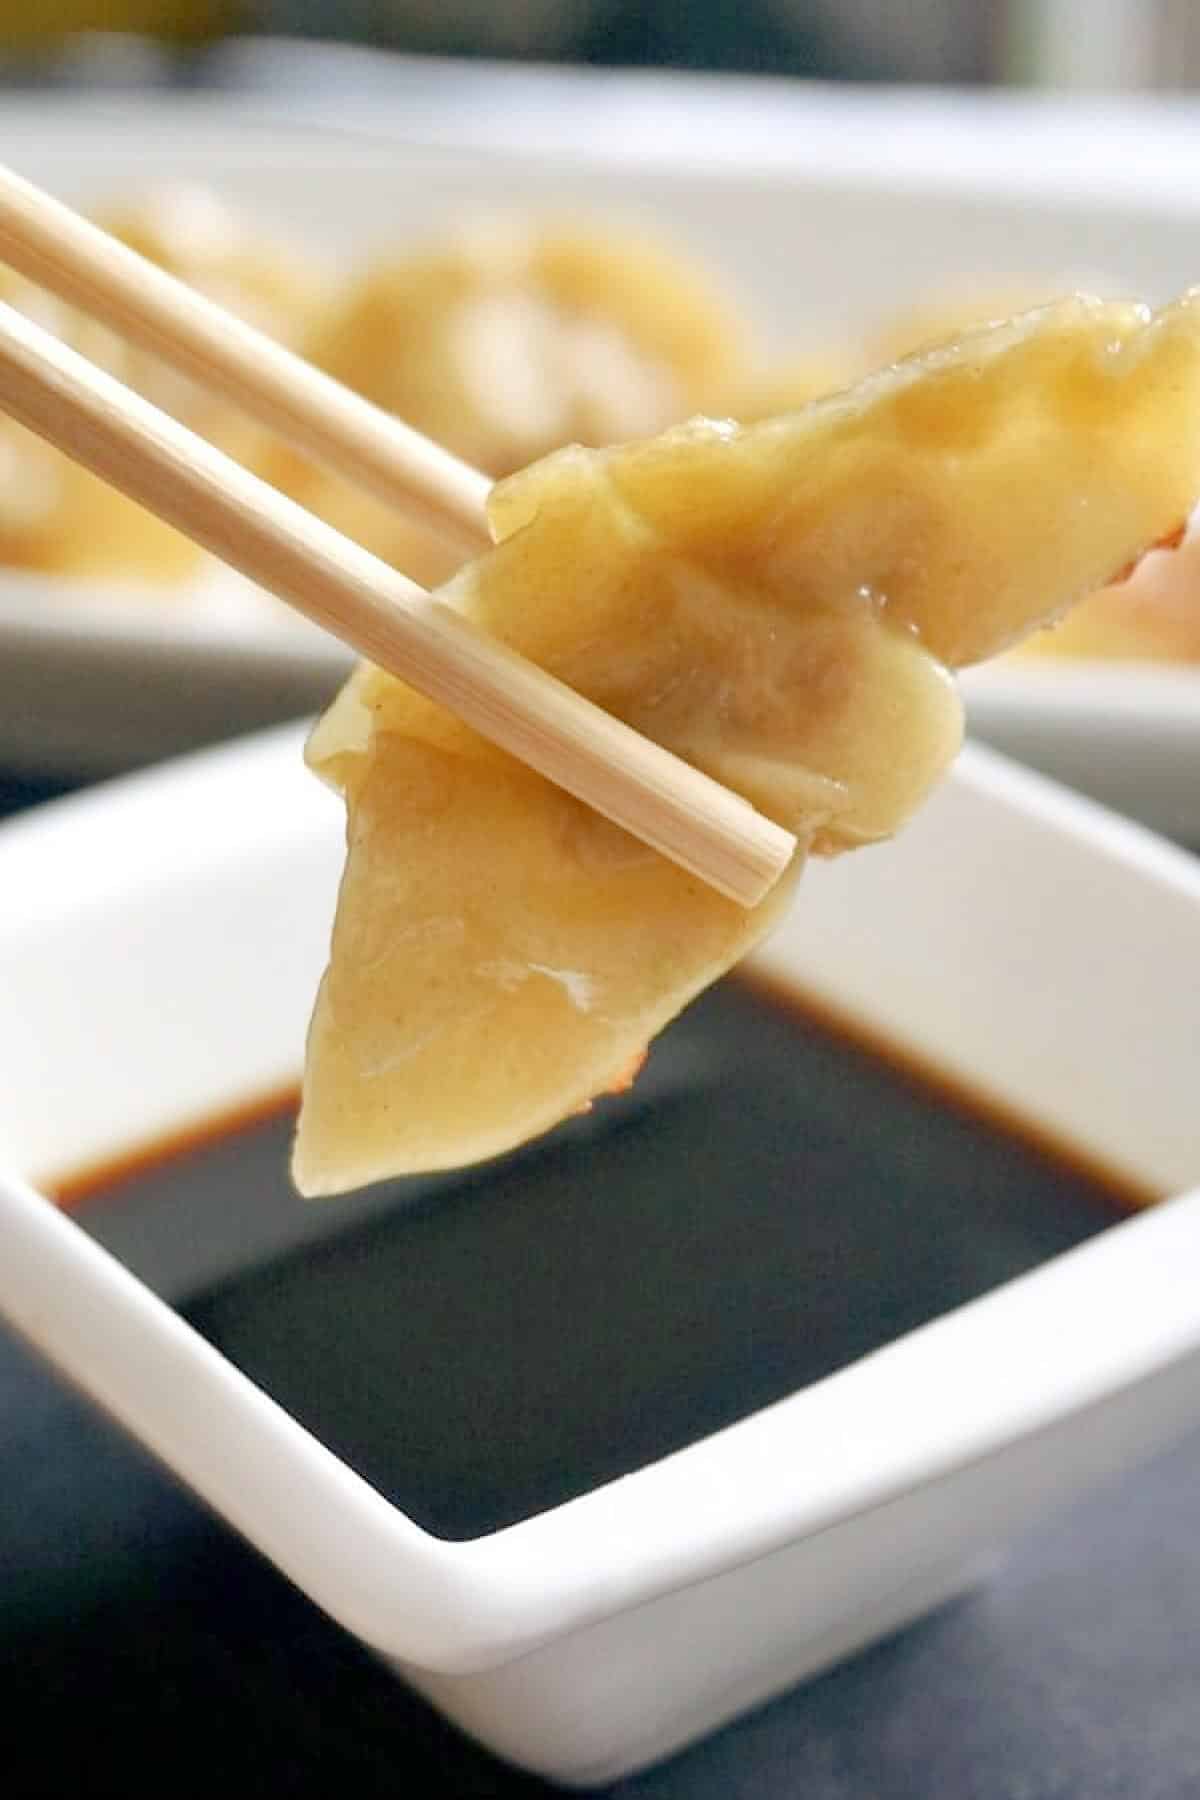 A Chinese dumpling on chopsticks.